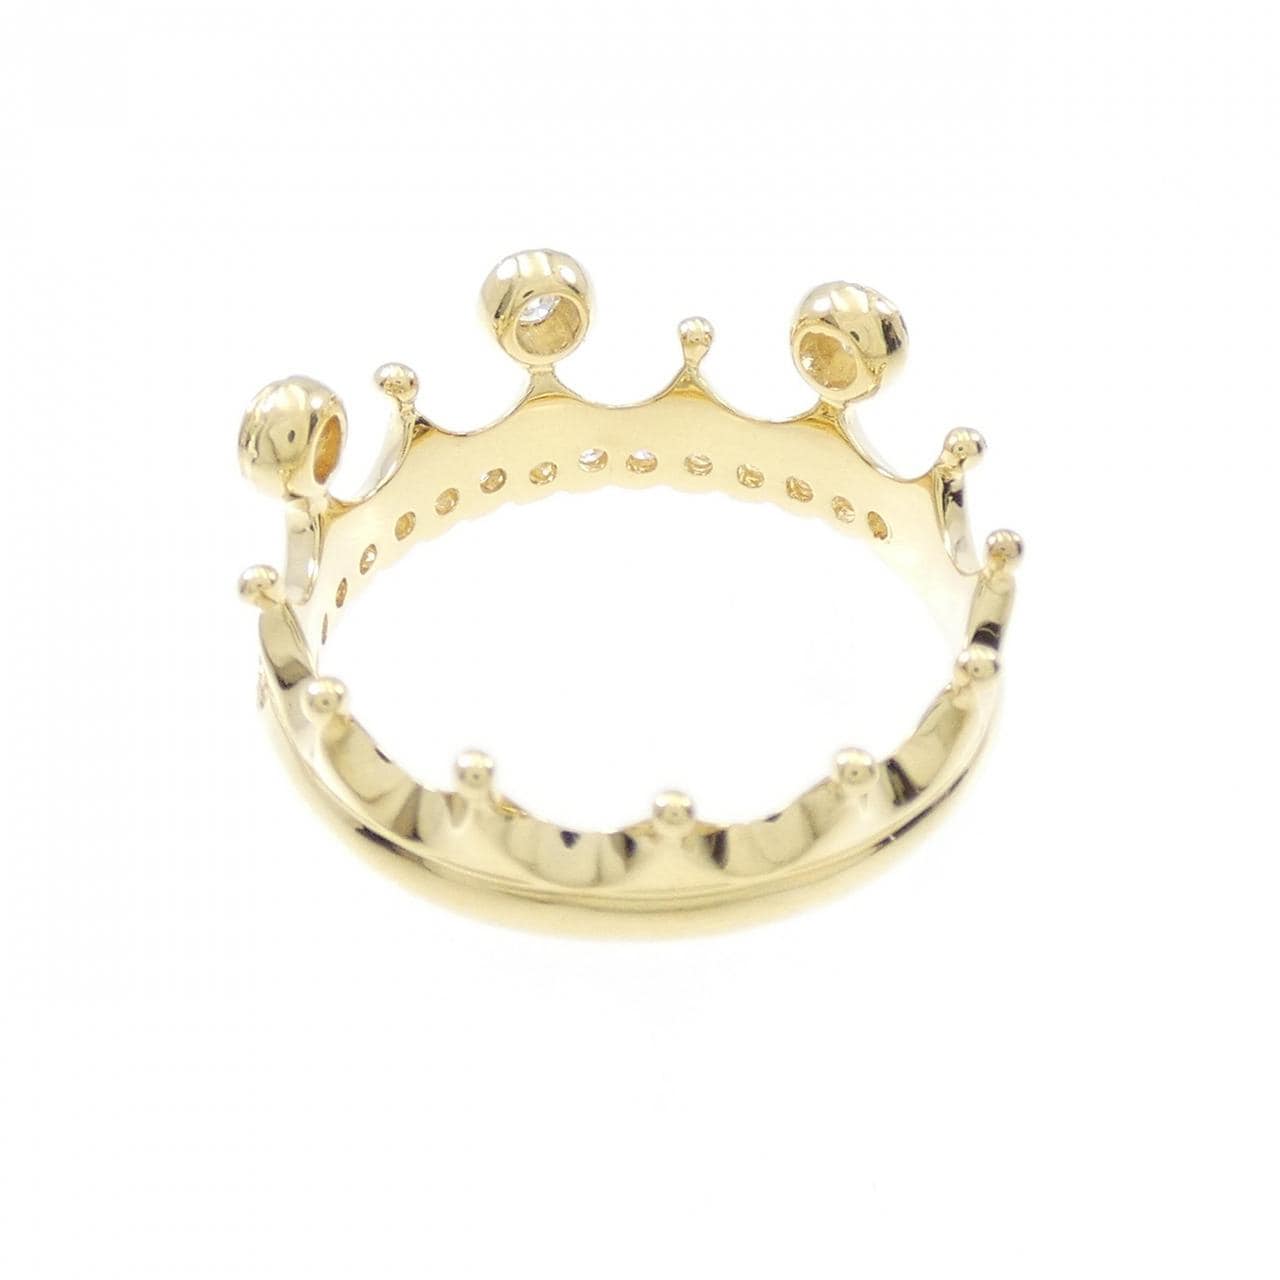 K18YG Crown Diamond Ring 0.43CT